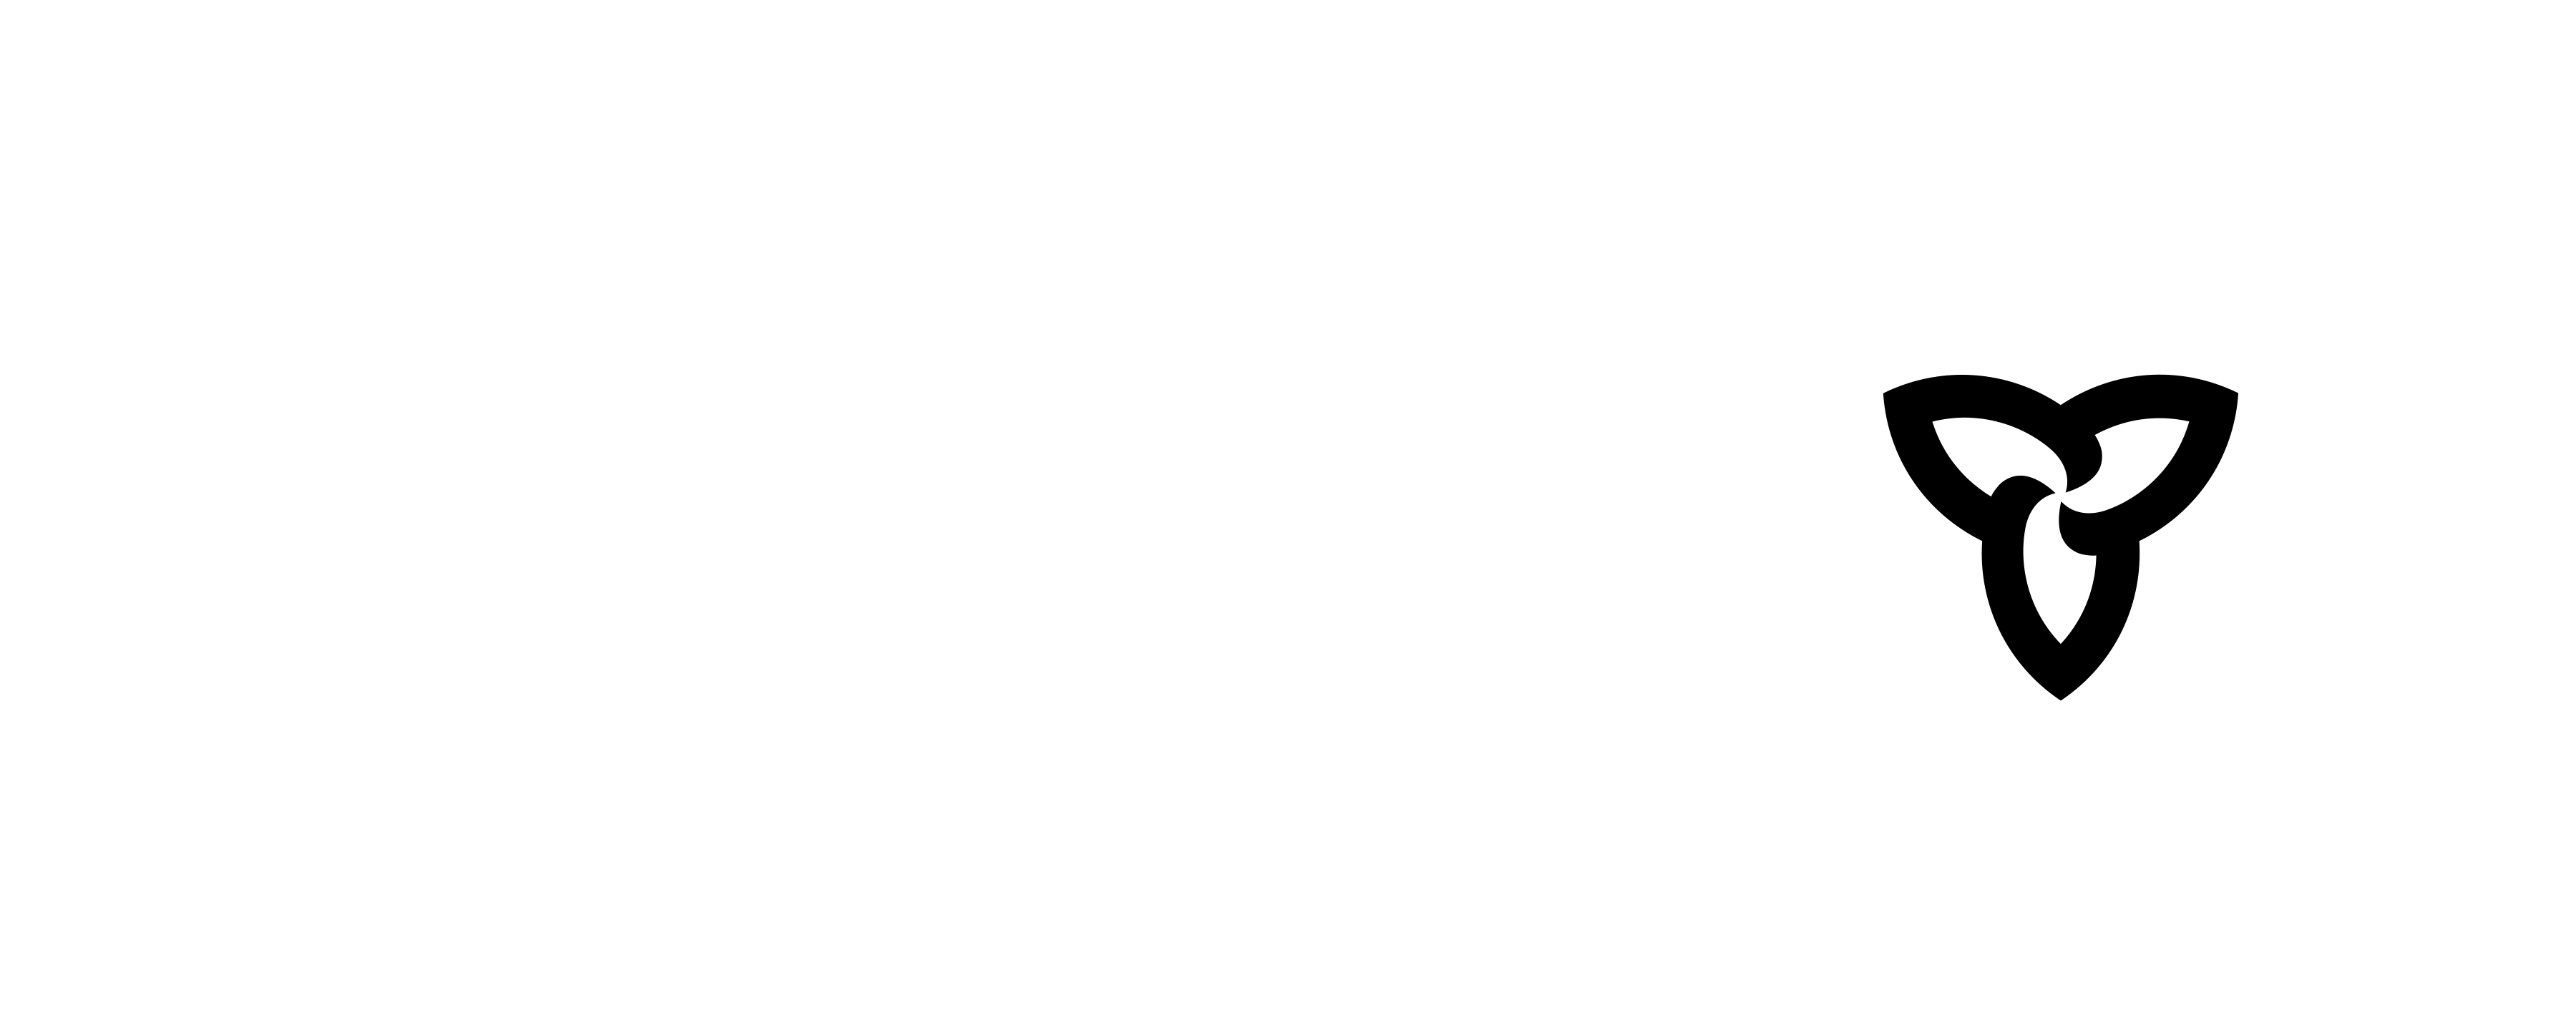 Ontario Government Logo